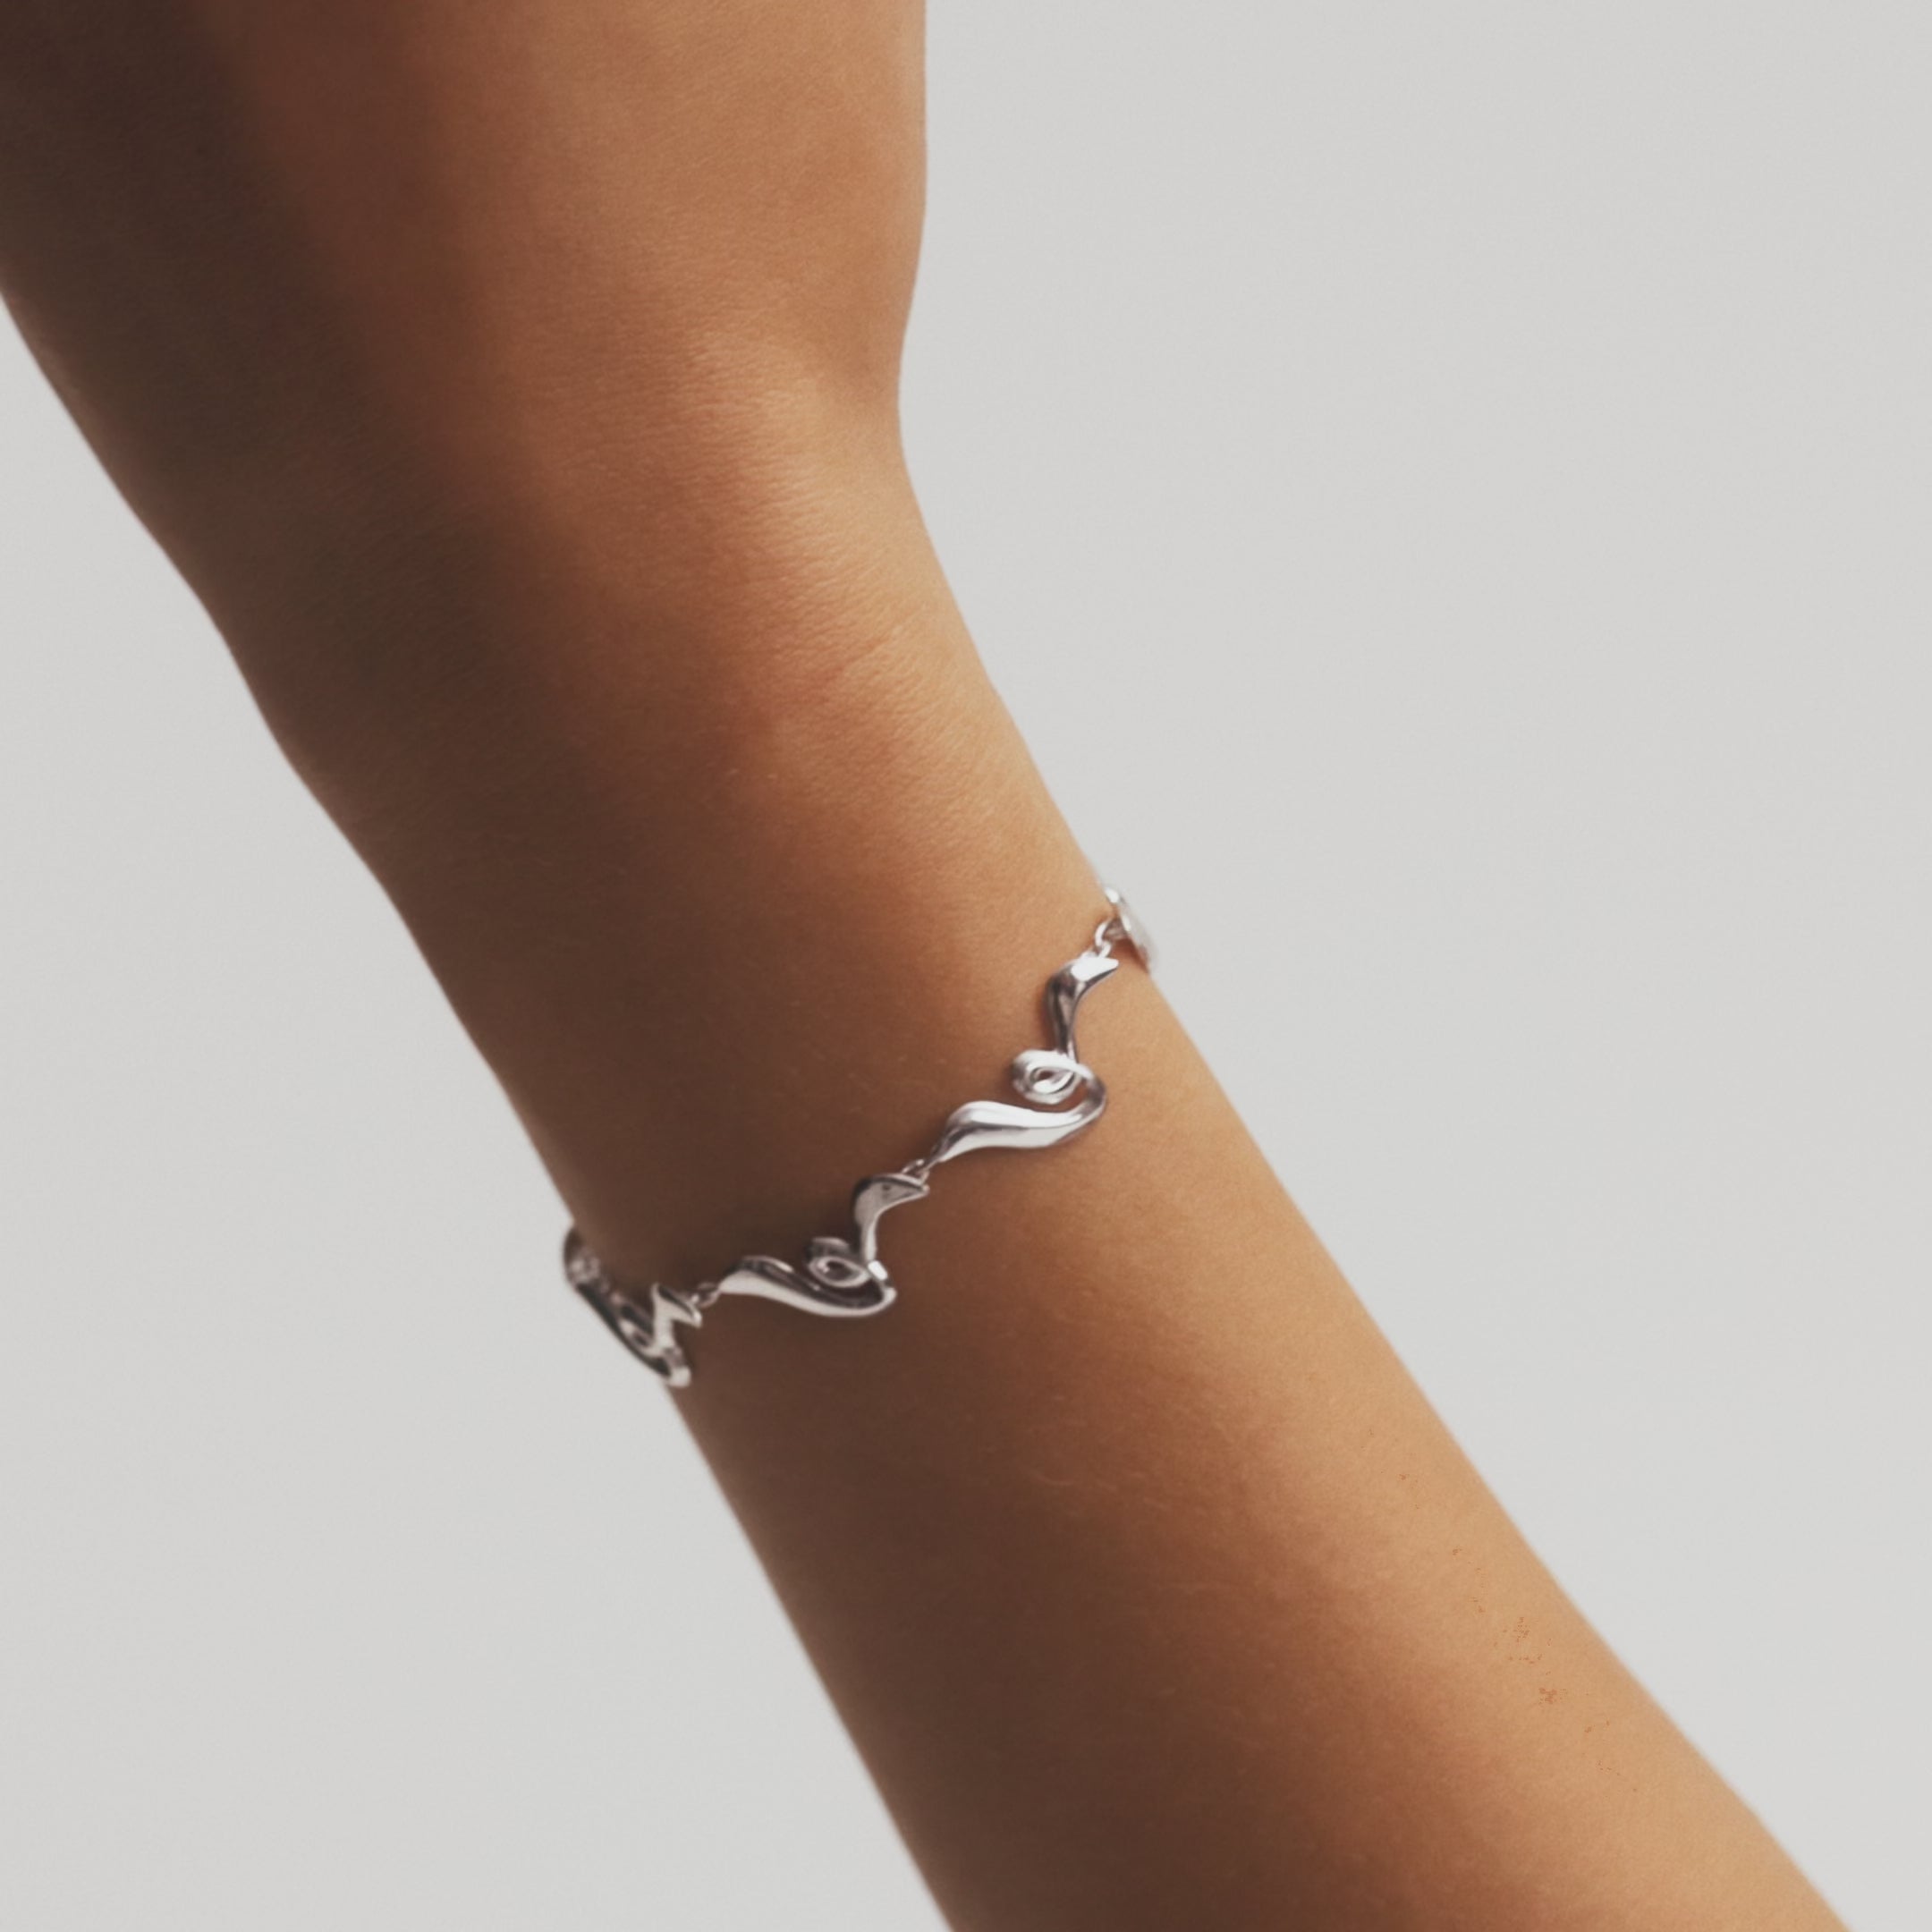 Poise Twirl Chain Bracelet in Sterling silver